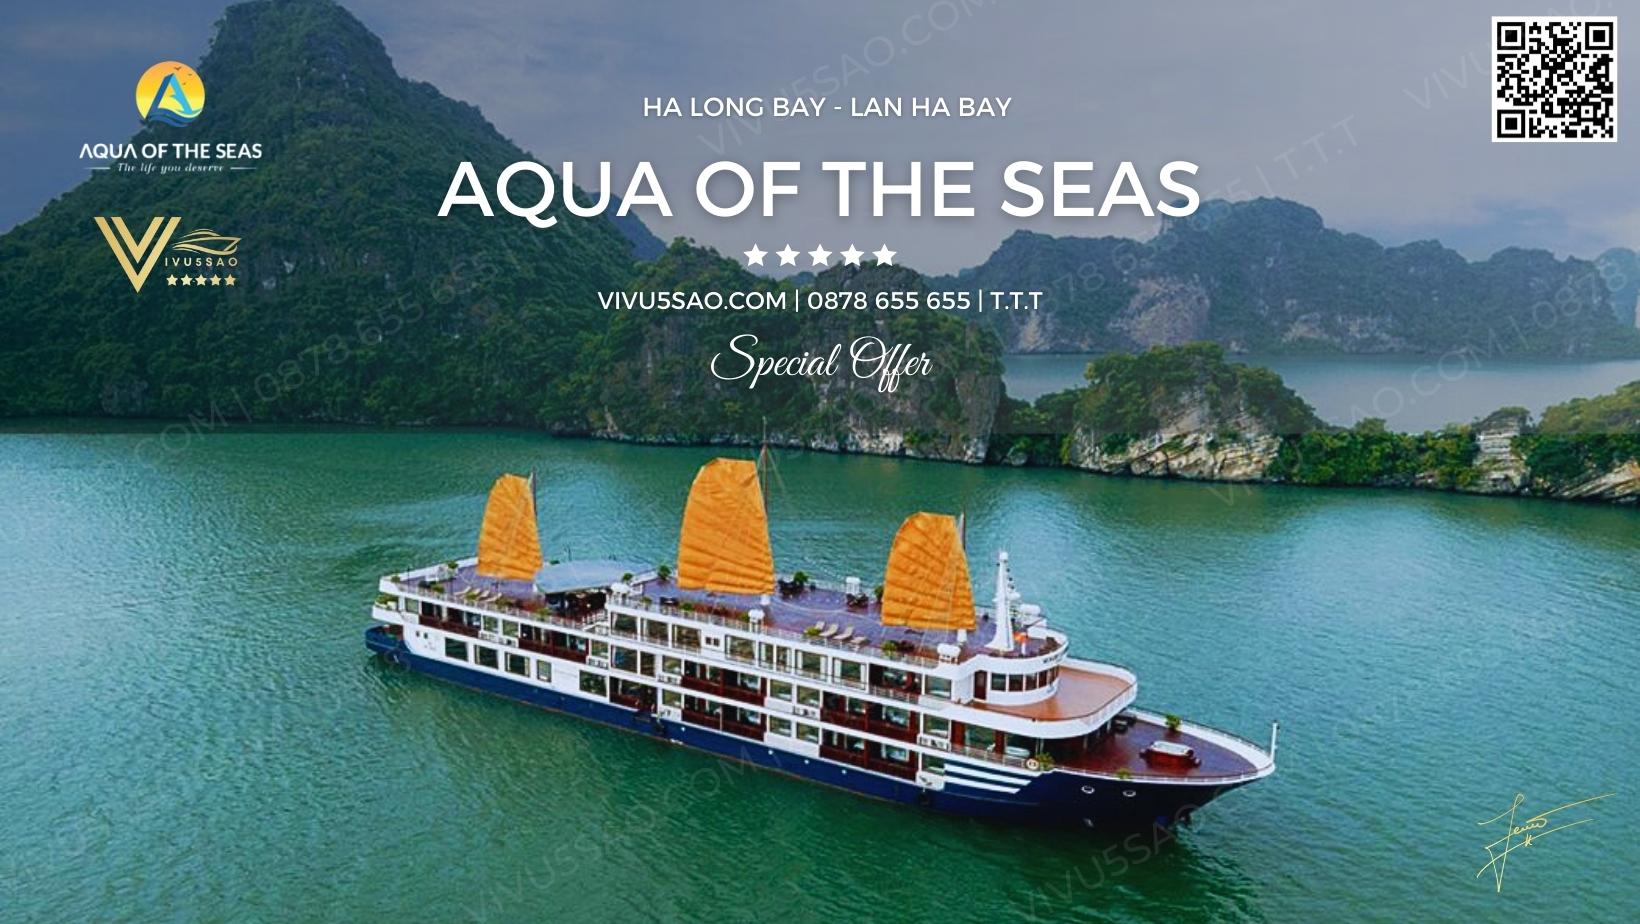 Aqua of the Seas Cruise - DU thuyền 5 sao